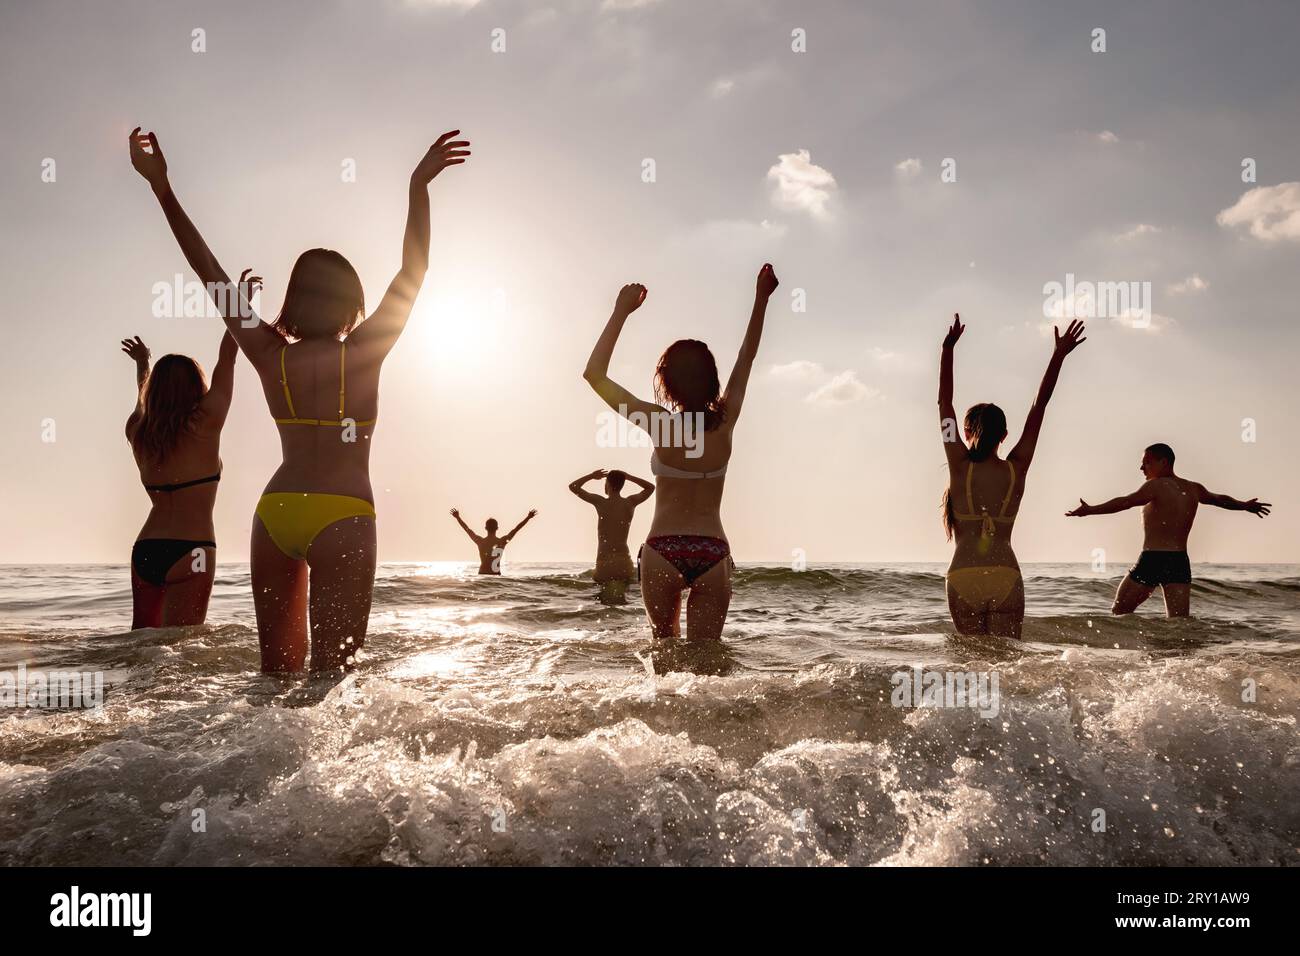 Un groupe de jeunes amis heureux se détendent au coucher du soleil sur la plage. Concept de vacances tropicales Banque D'Images